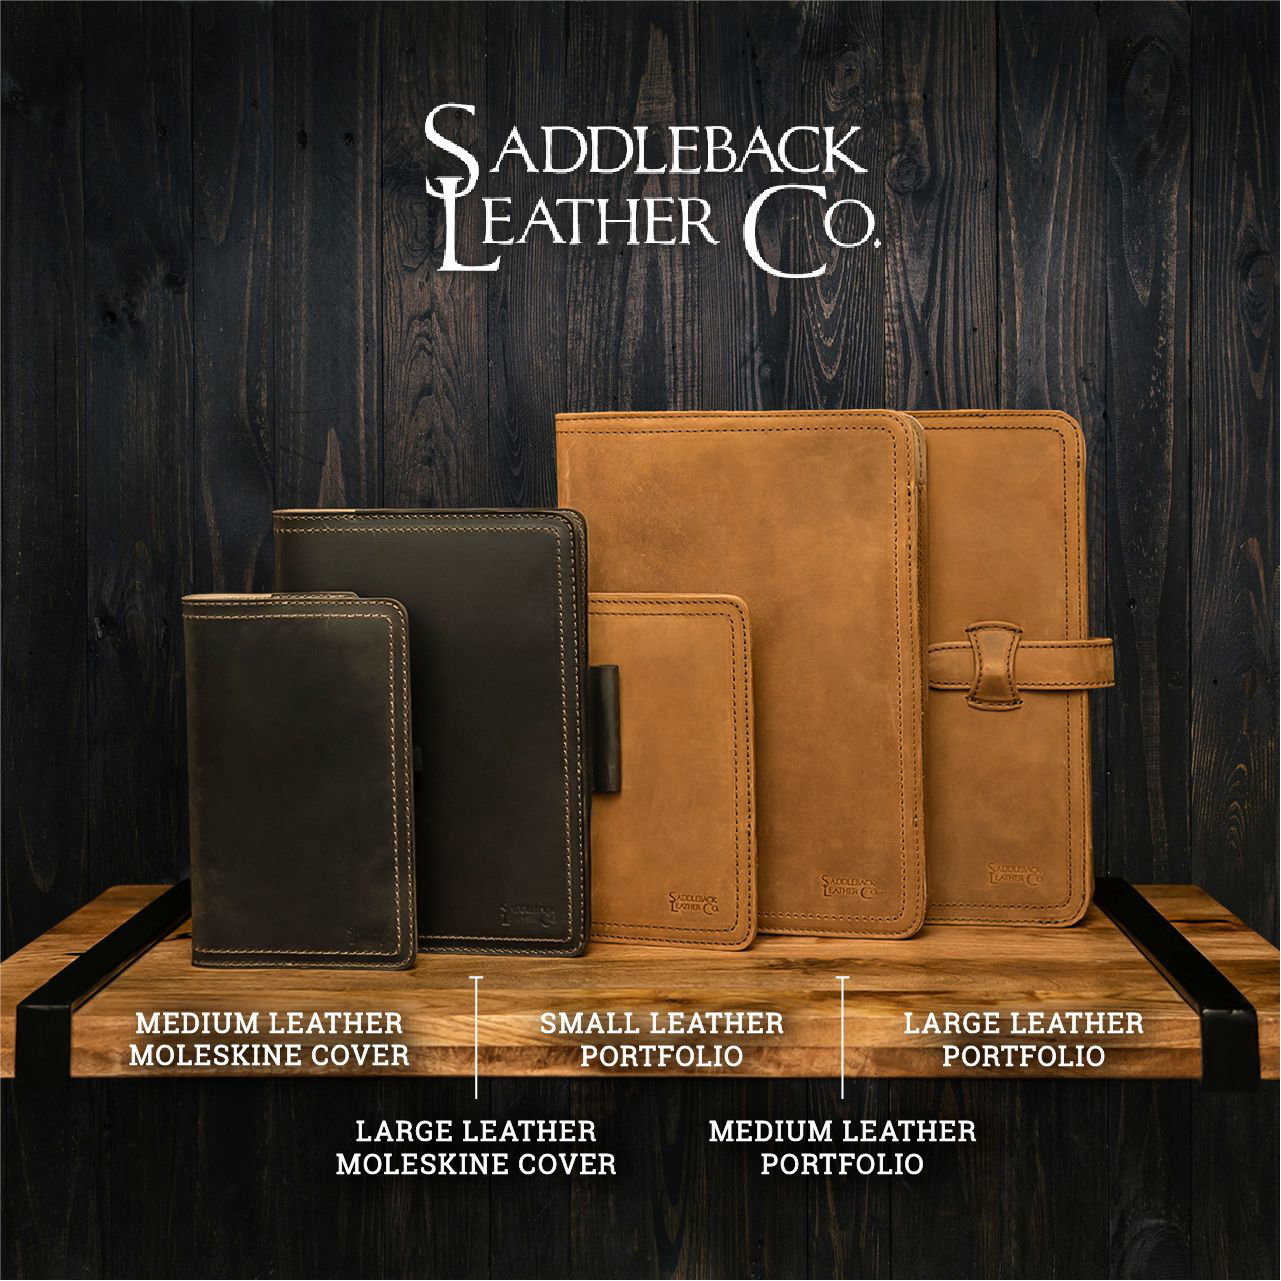 38 Benefits of Chess - Saddleback Leather Co.